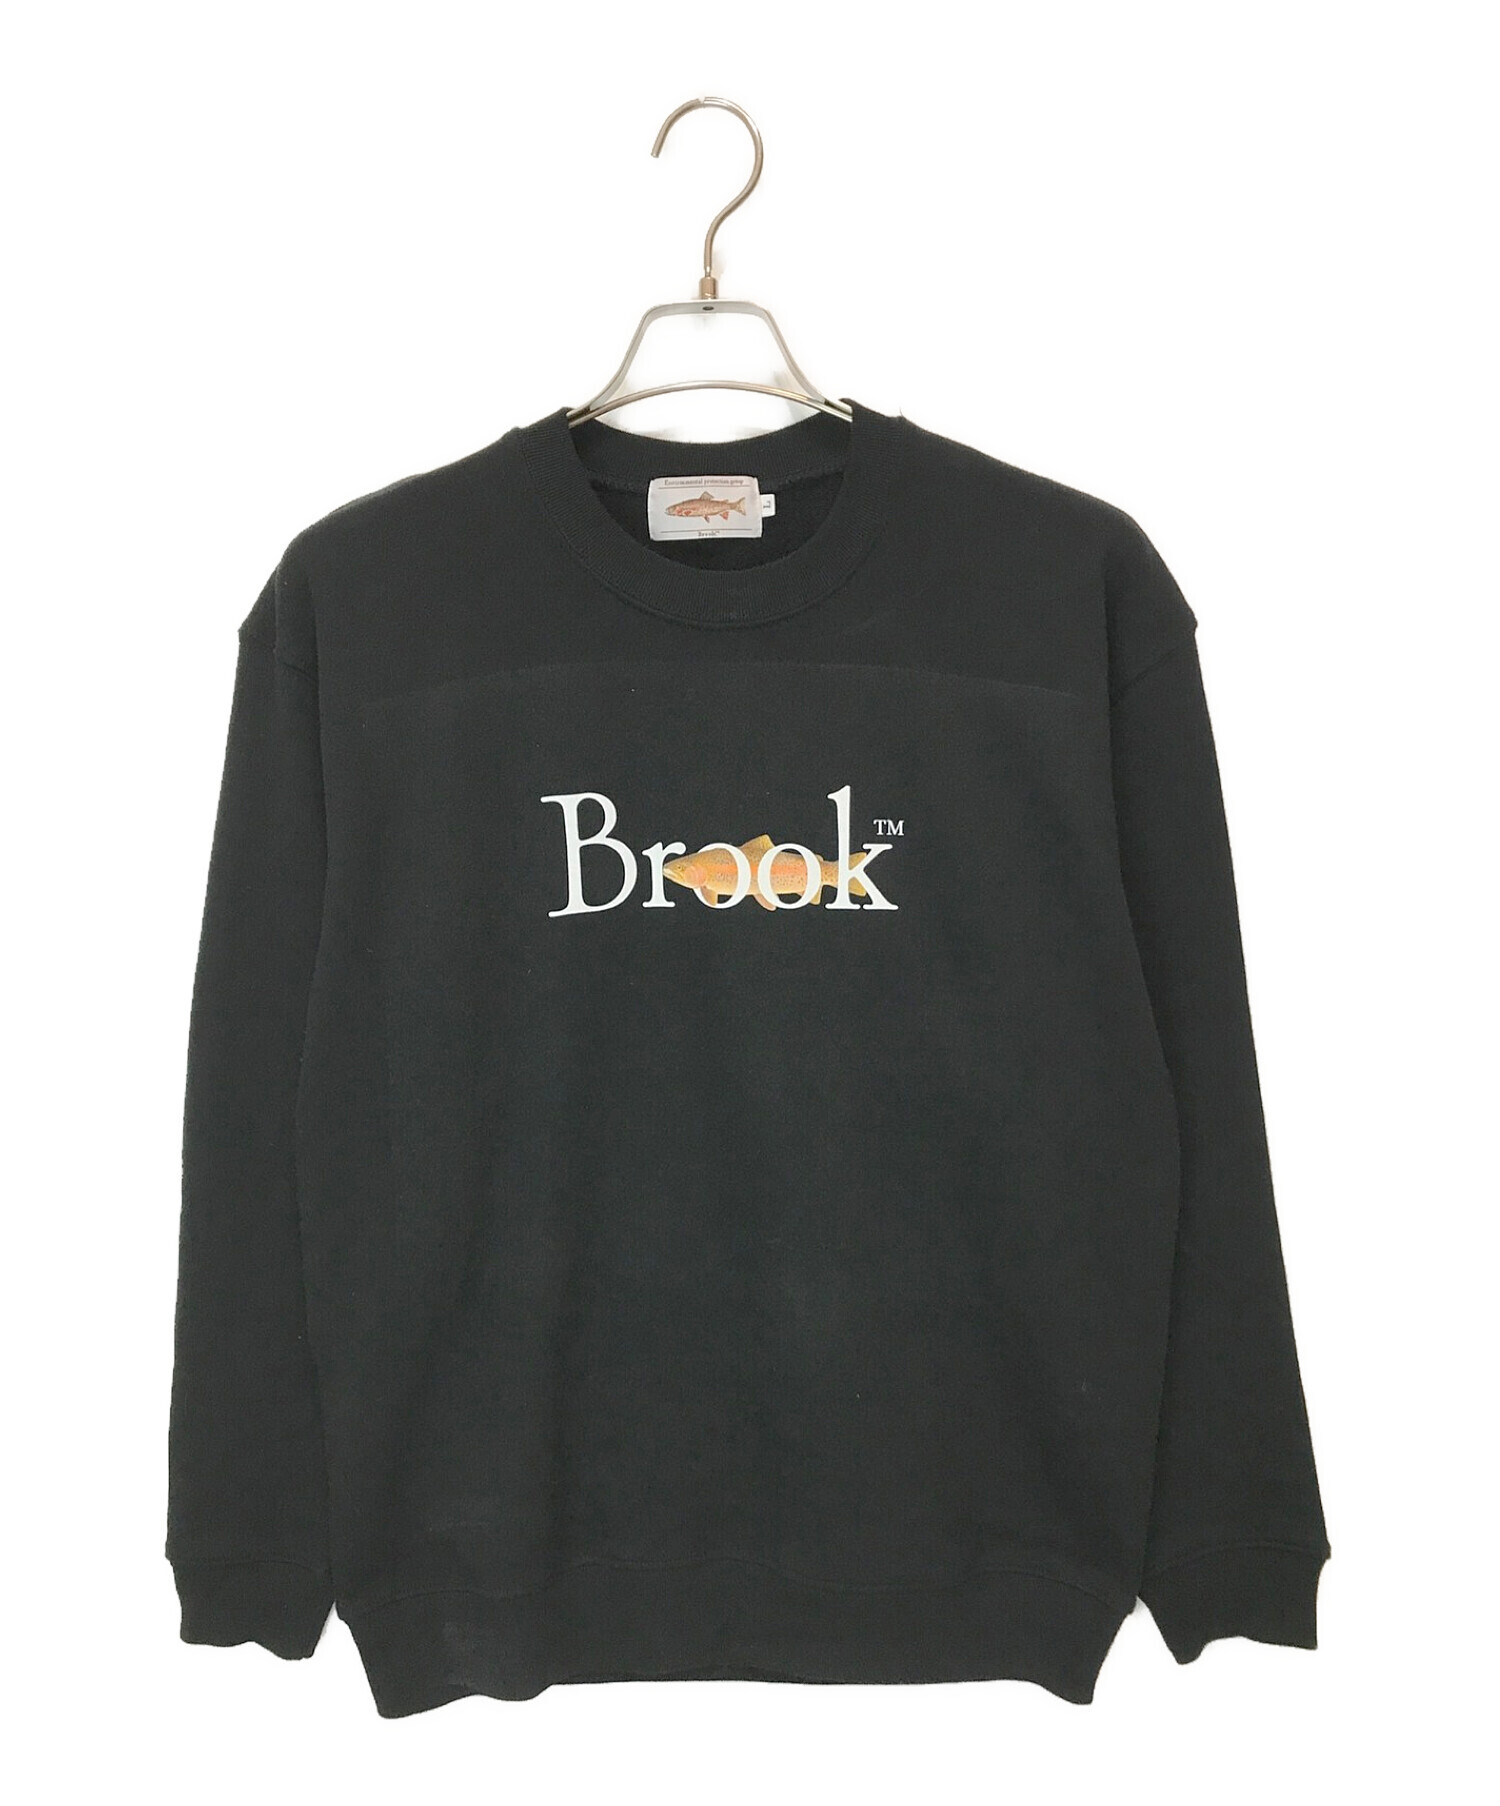 brook ブルック スウェット black-